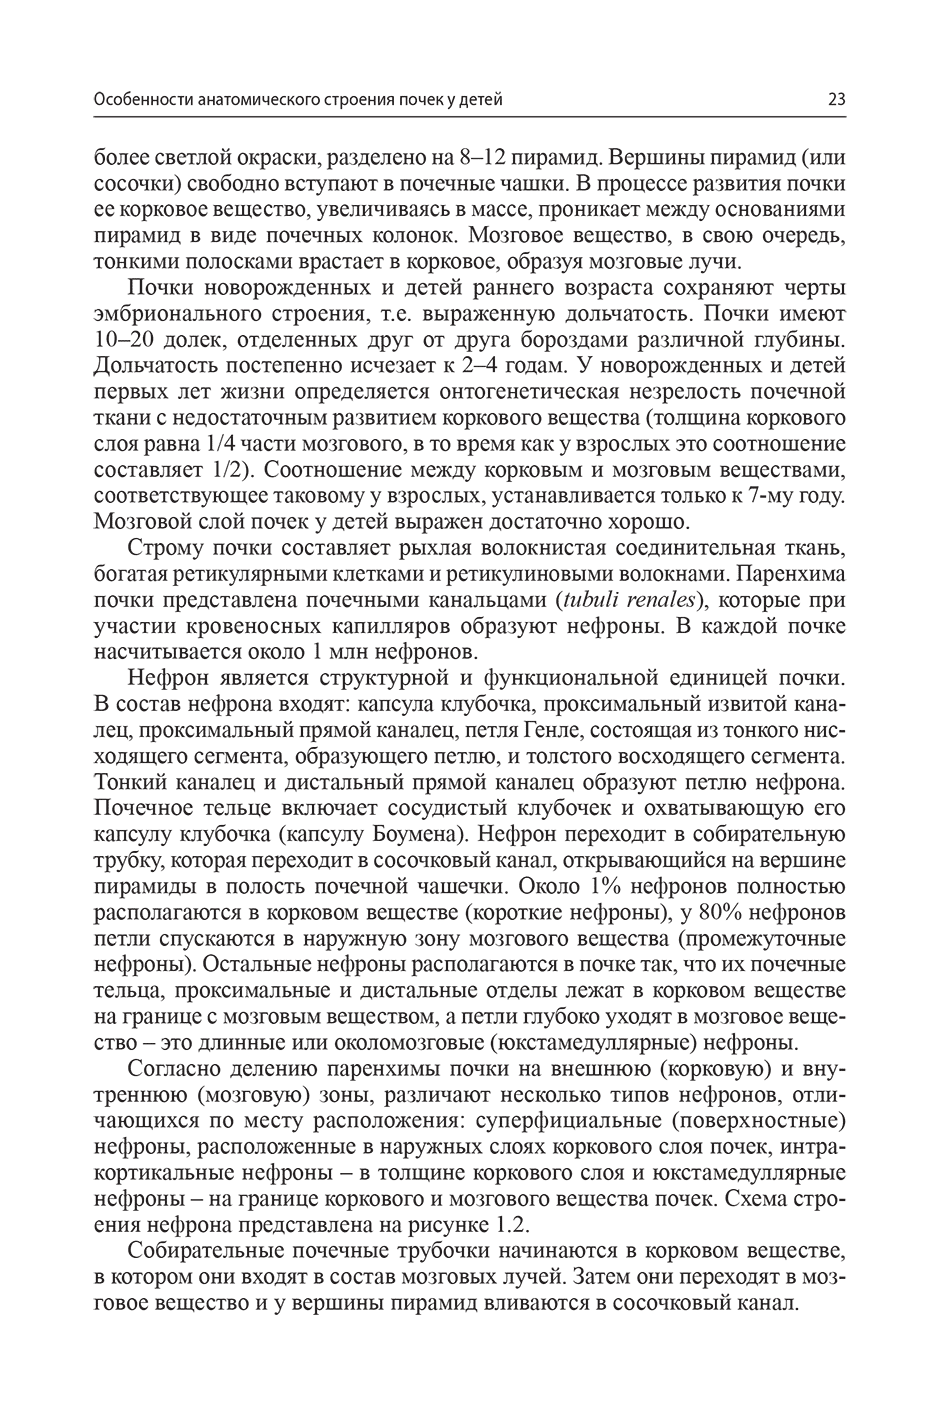 Пример страницы из книги "Детская нефрология: учебник" - Шумилов П. В.